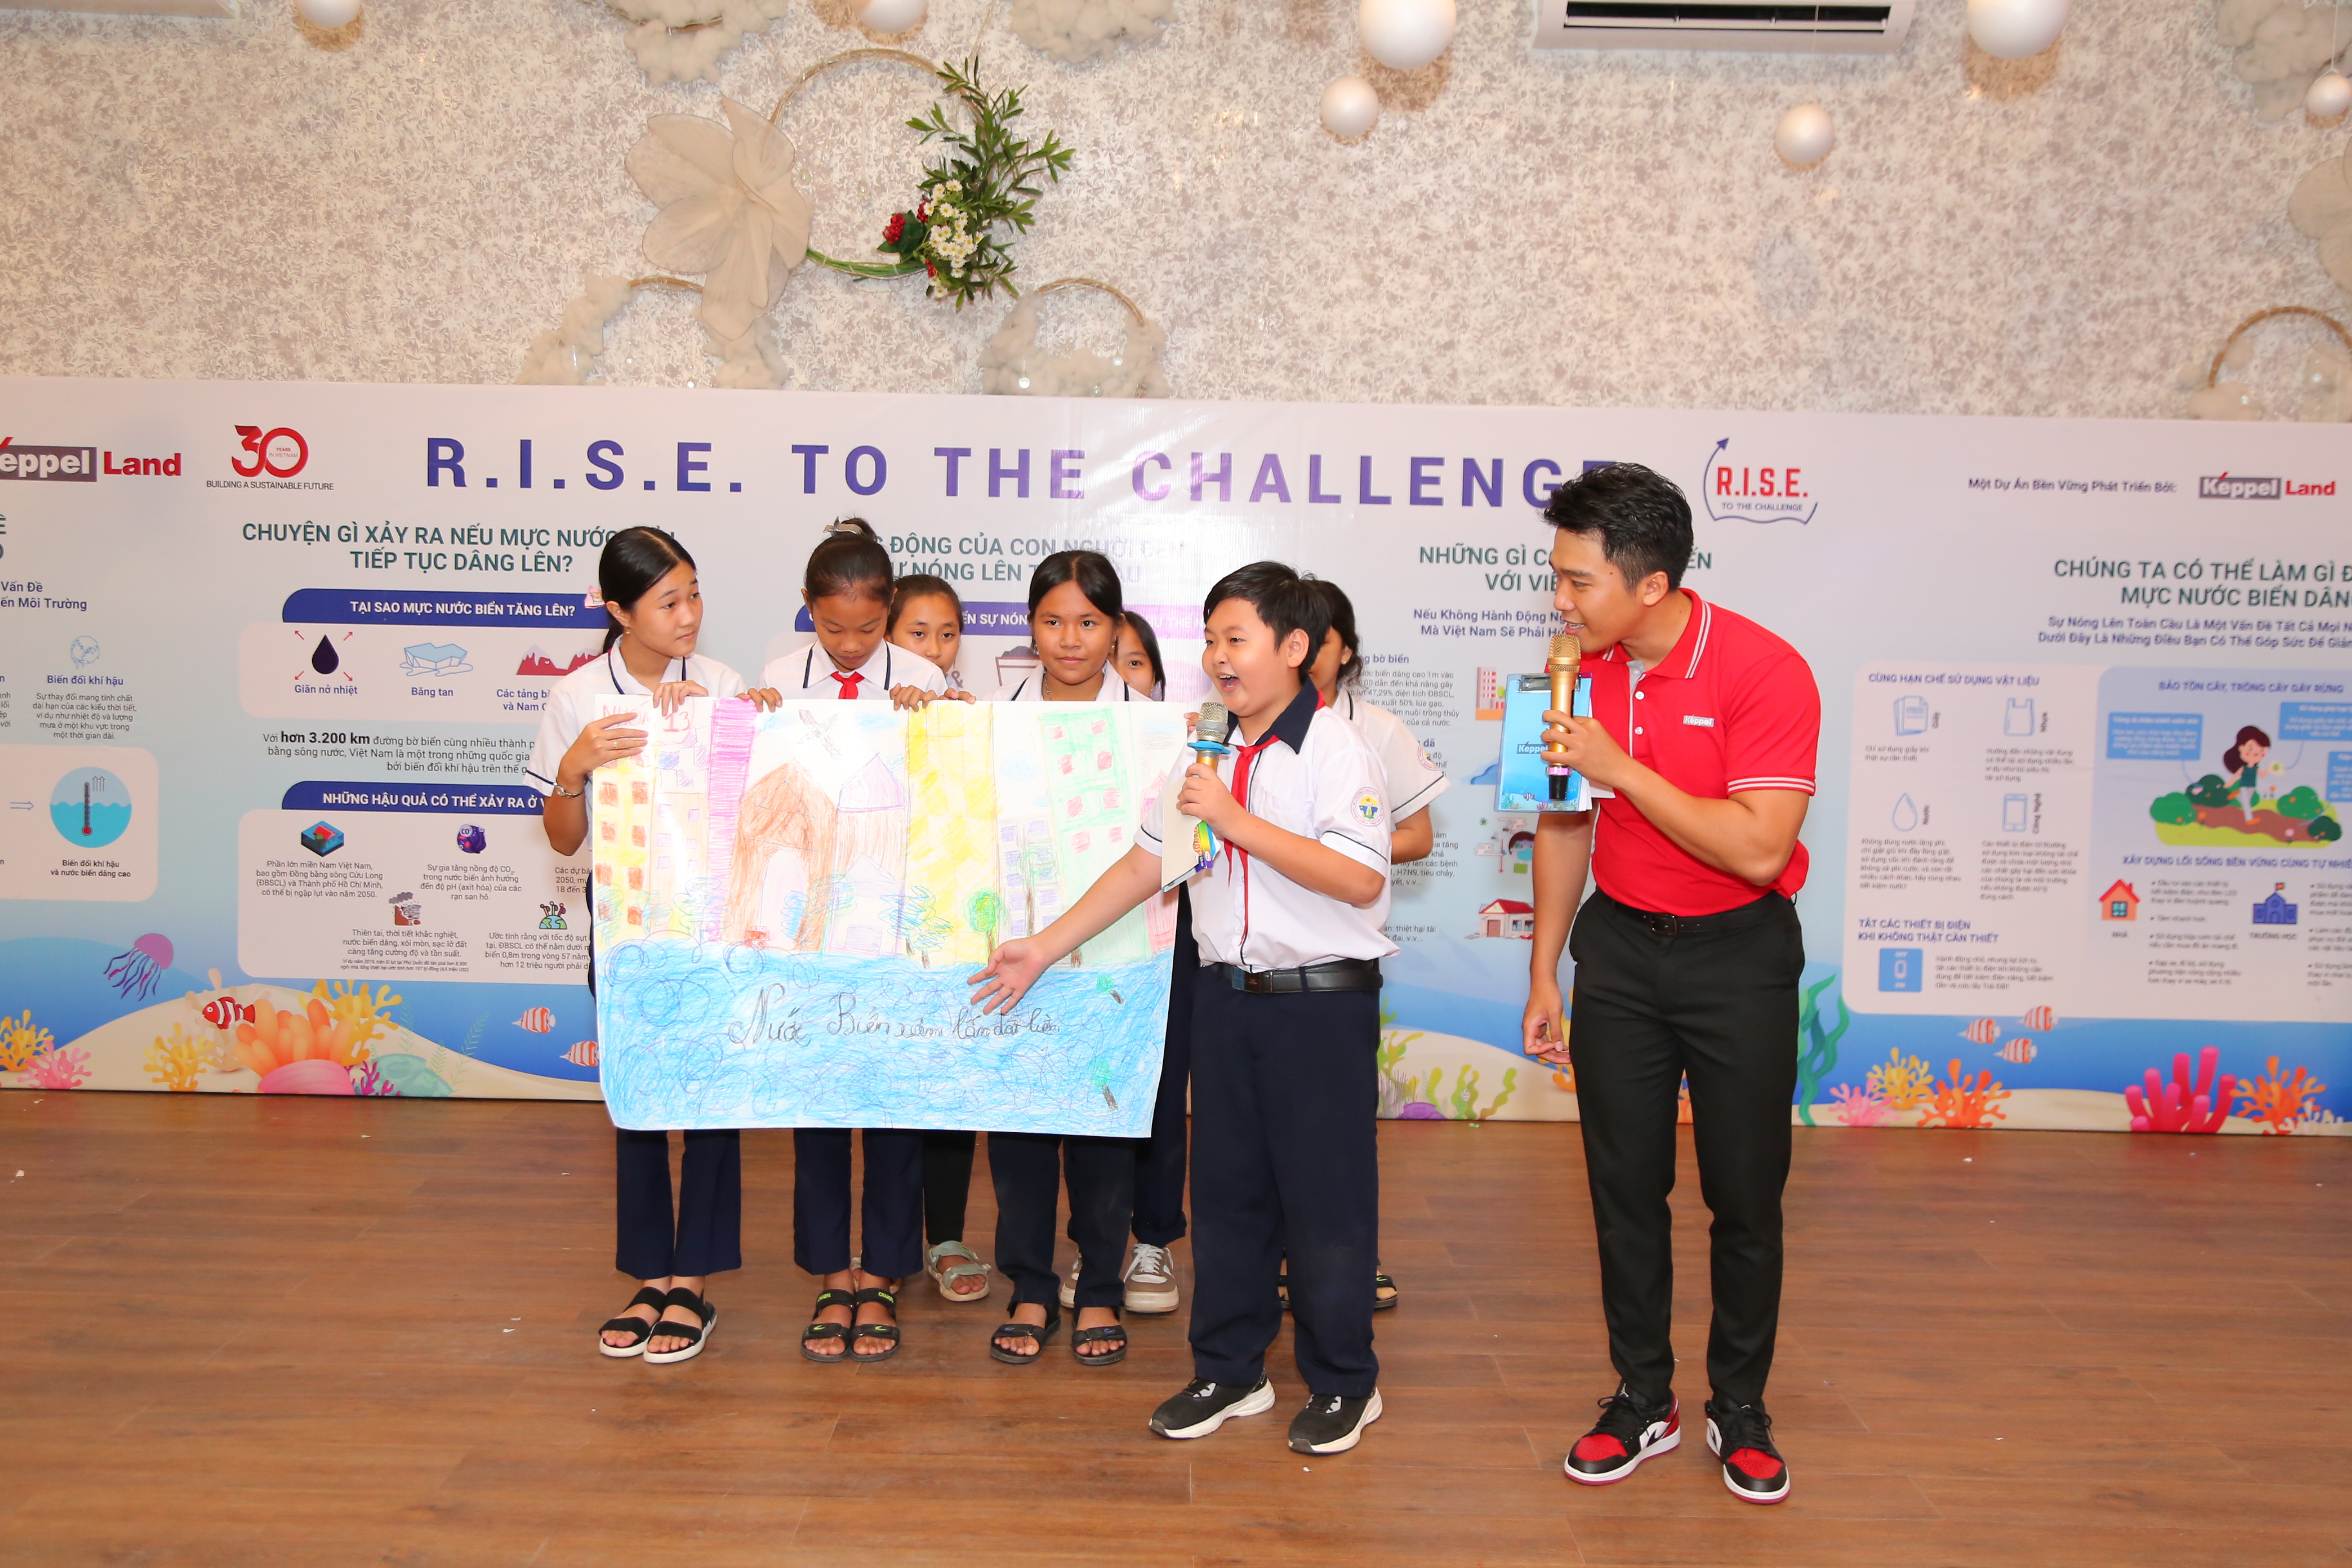 Các em học sinh trường Gành Dầu thuyết trình về bức tranh với chủ đề biến đổi khí hậu tại sự kiện.